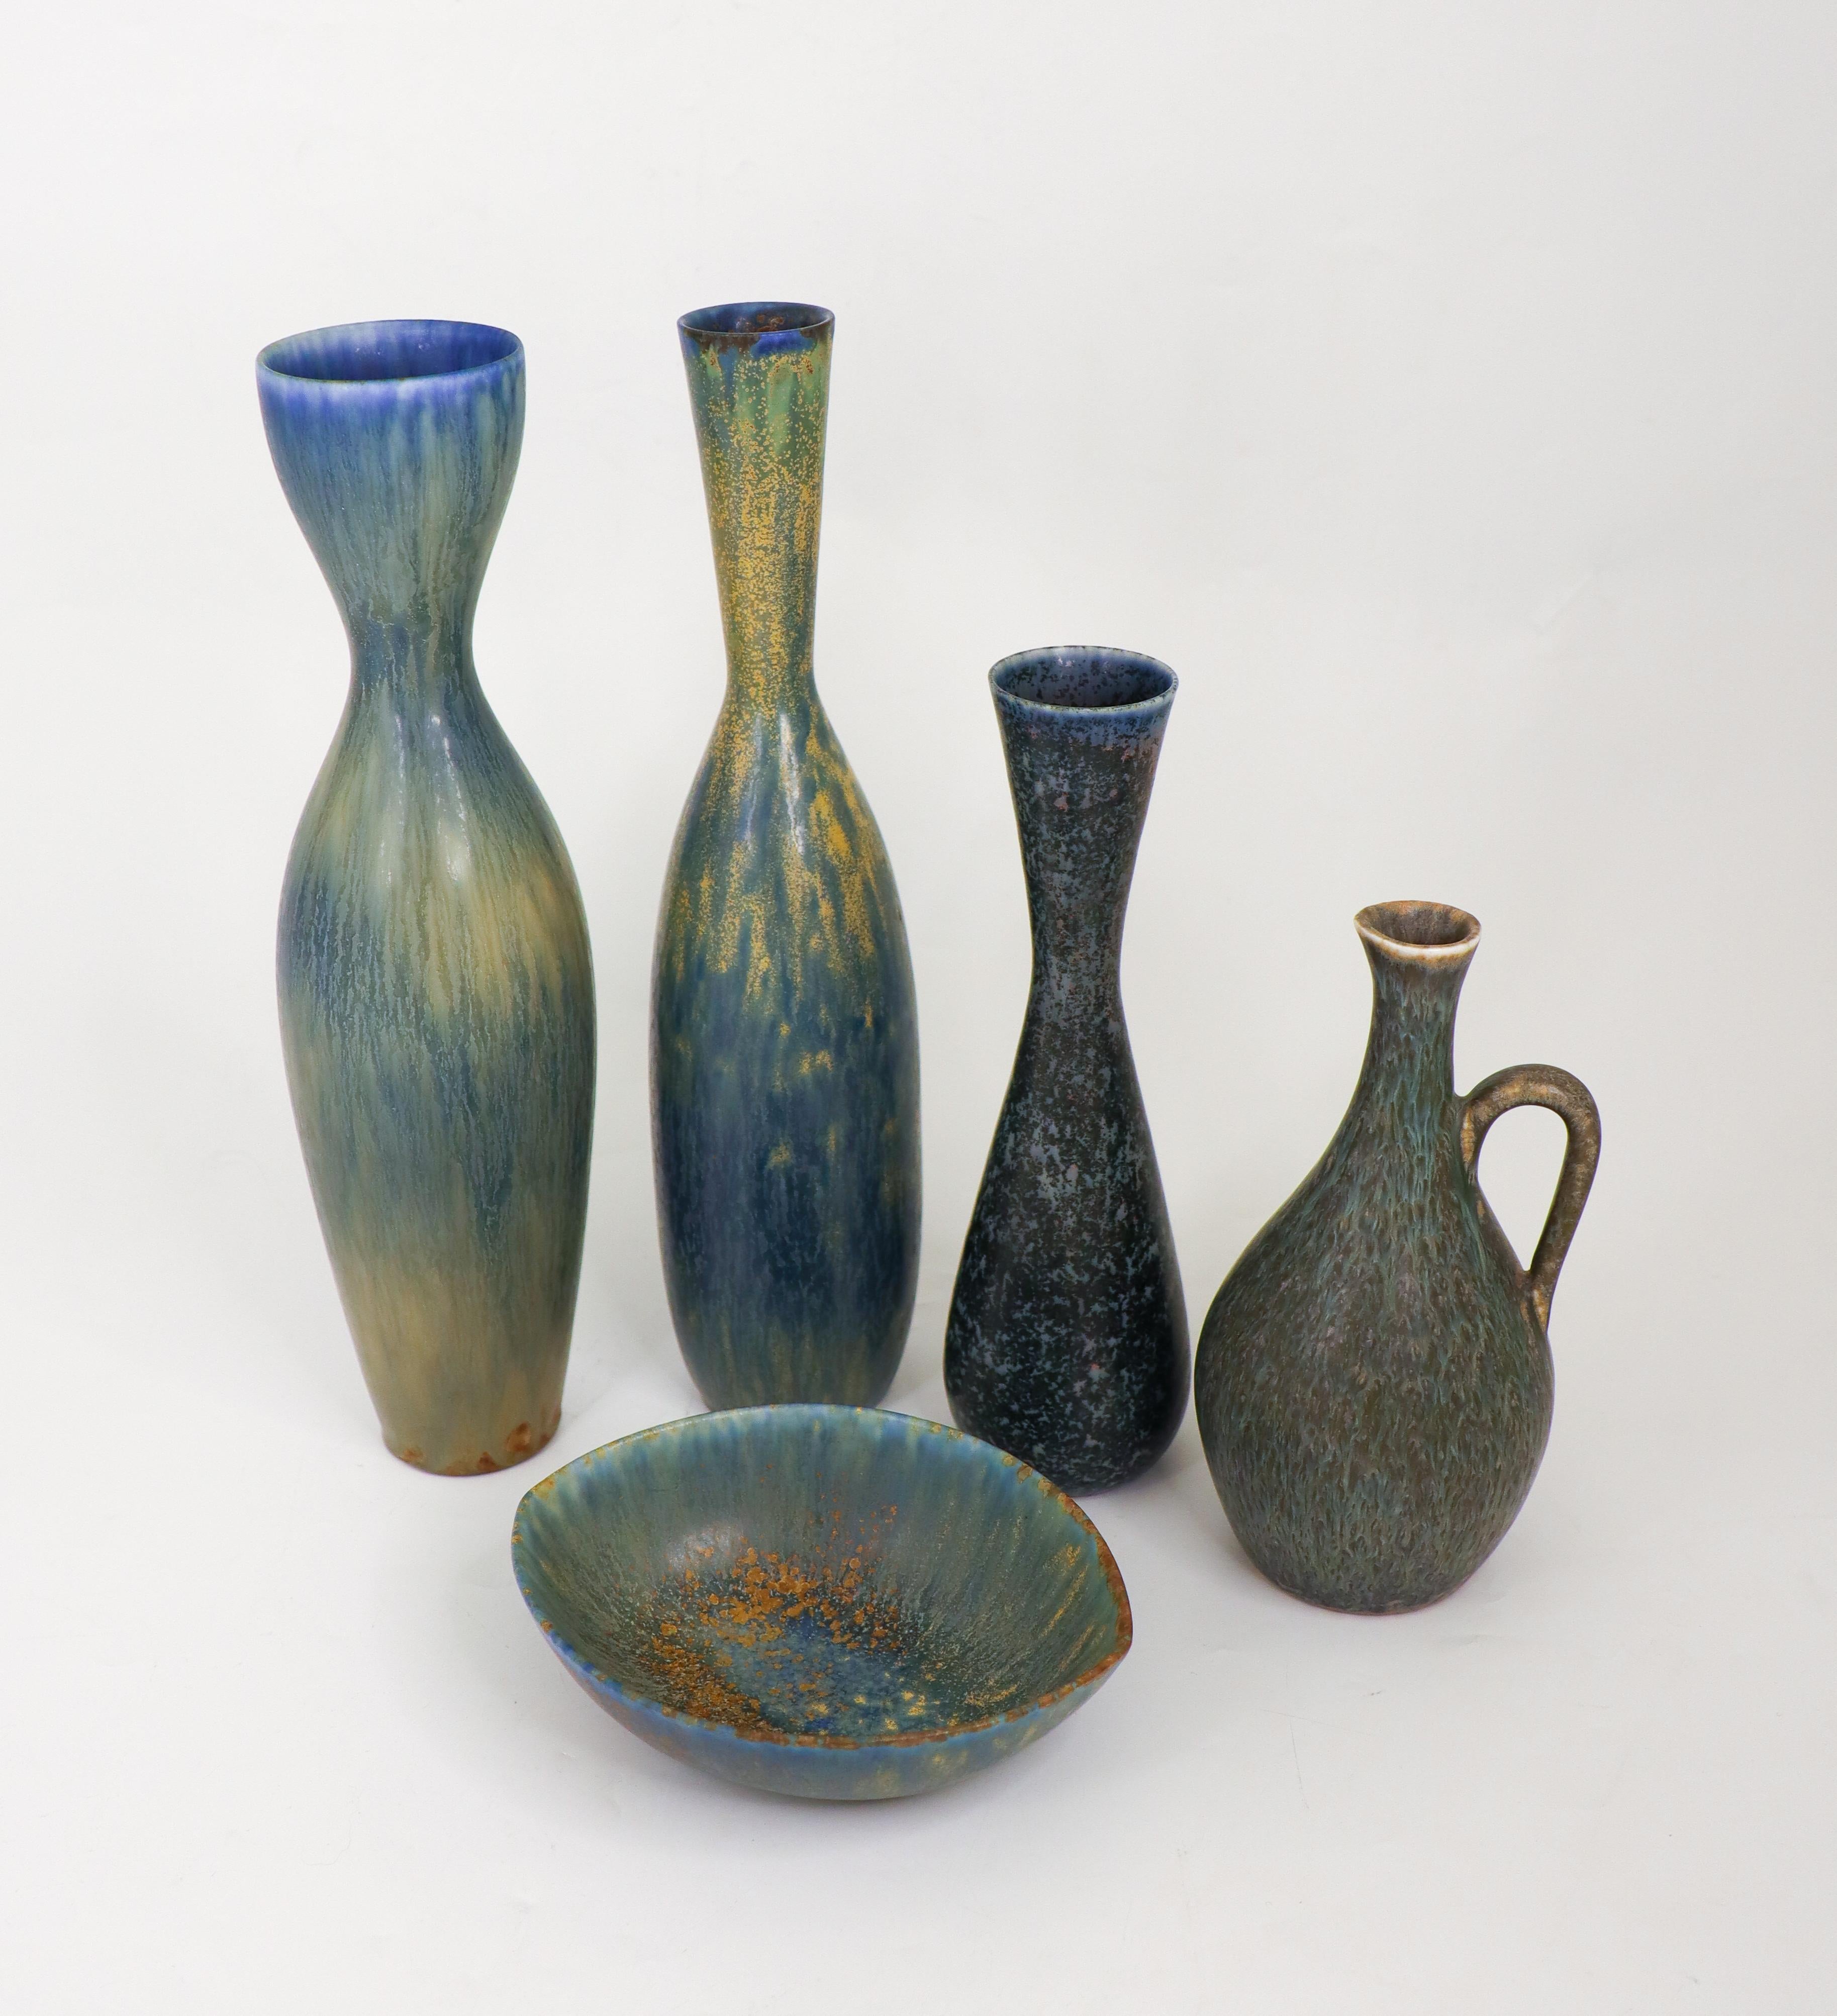 Vernissé Groupe de 4 vases et coupes en céramique bleue, Rörstrand - Carl-Harry Stålhane en vente